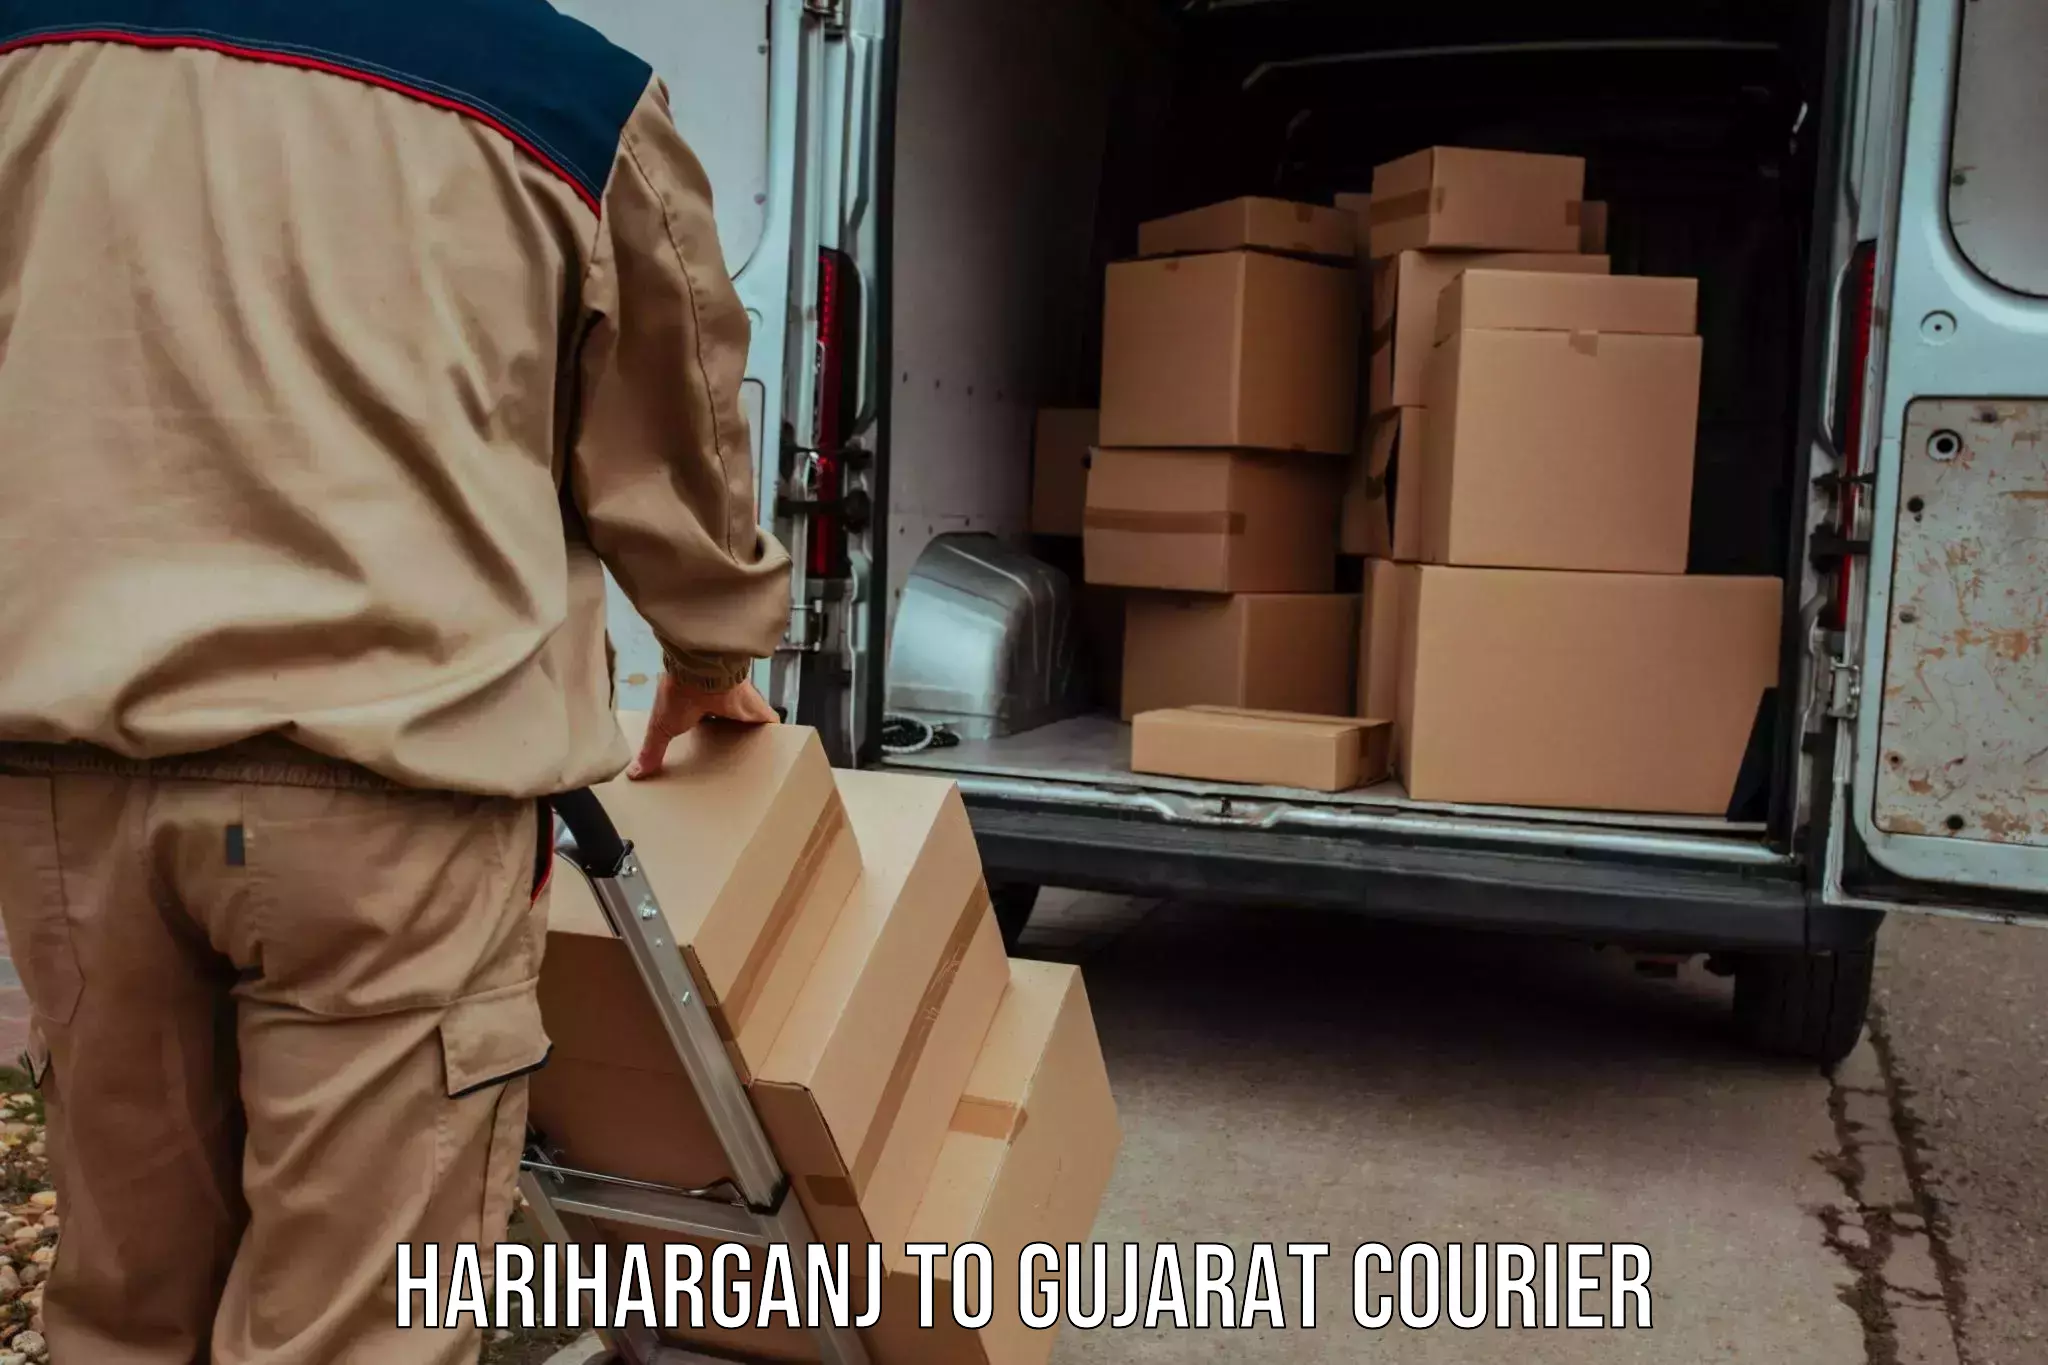 24/7 courier service in Hariharganj to Dhoraji